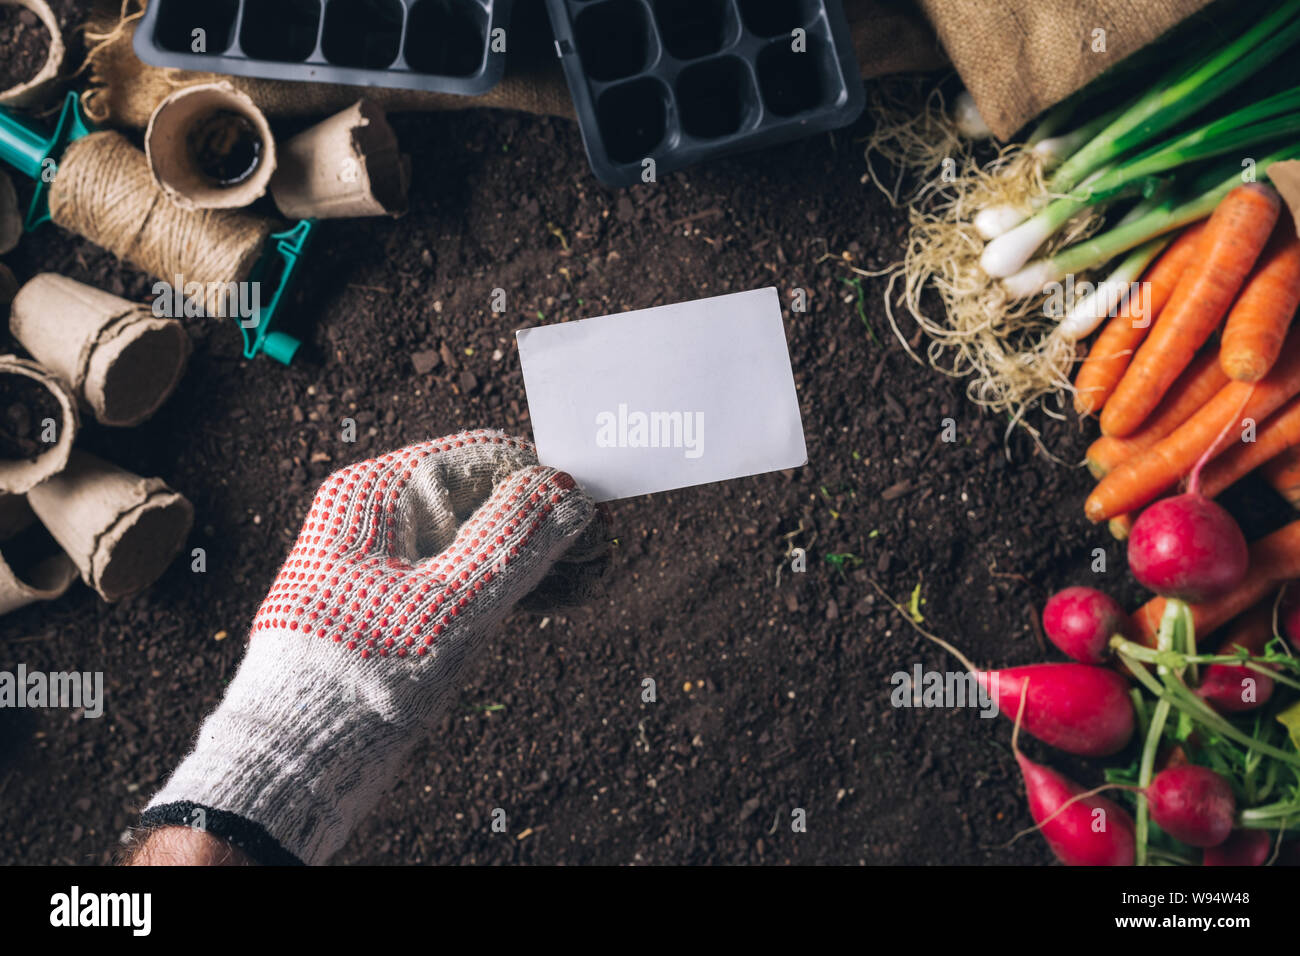 Business card mock up per organici homegrown produrre coltivazione, maschio giardiniere tenendo la scheda su raccolte di vegetali e attrezzature da giardinaggio Foto Stock